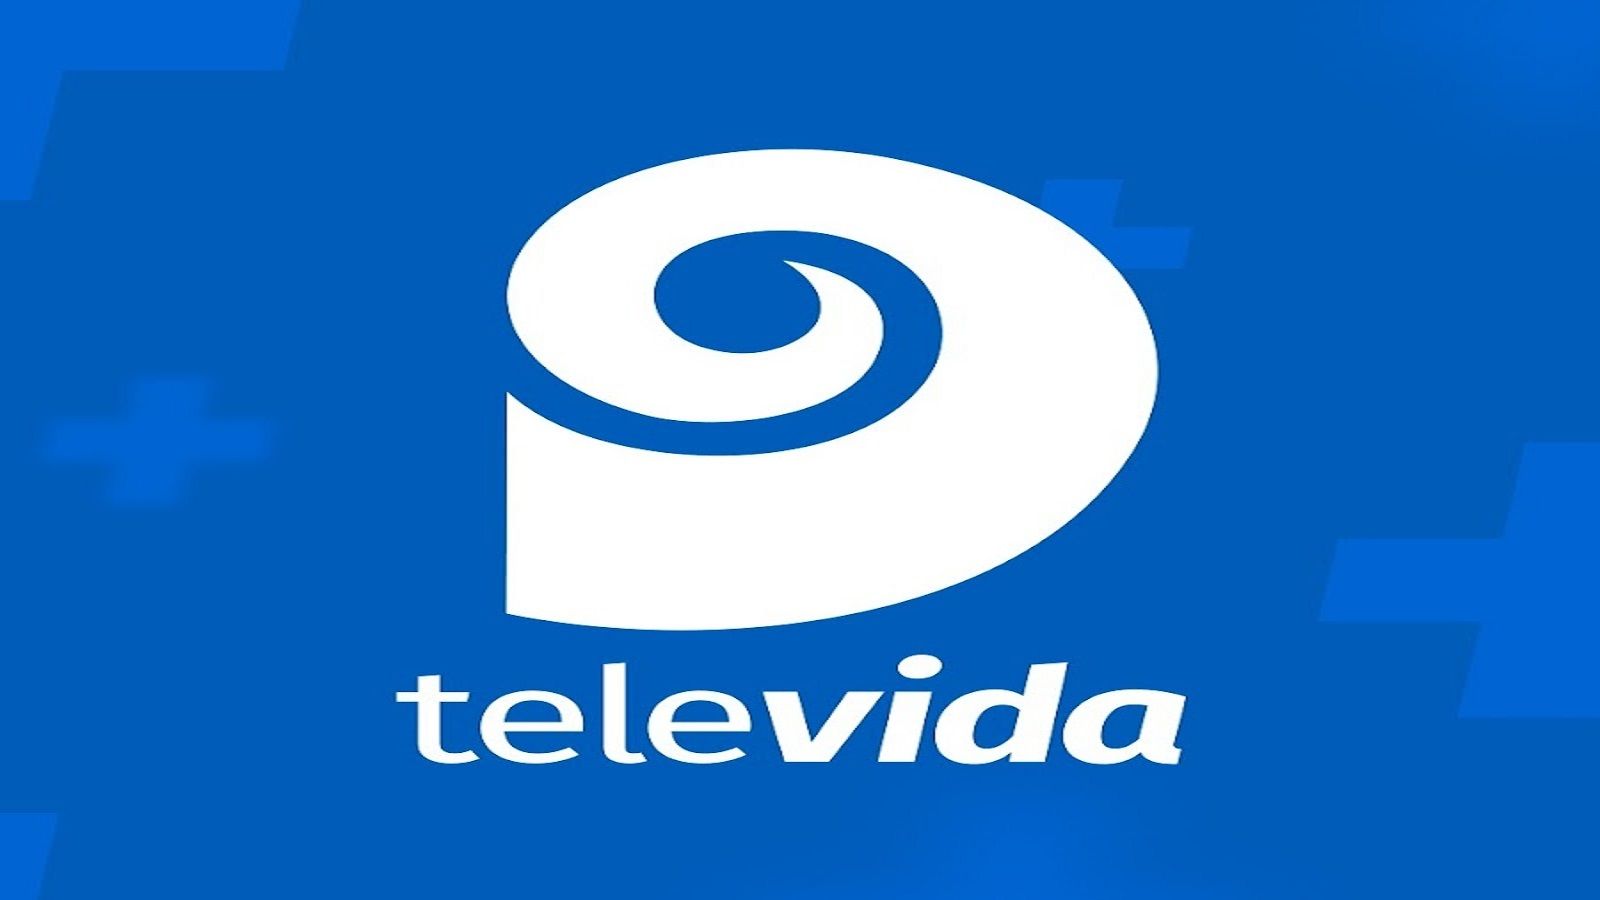 Ver Canal 9 Televida en vivo: cómo y dónde ver online el canal líder de Mendoza